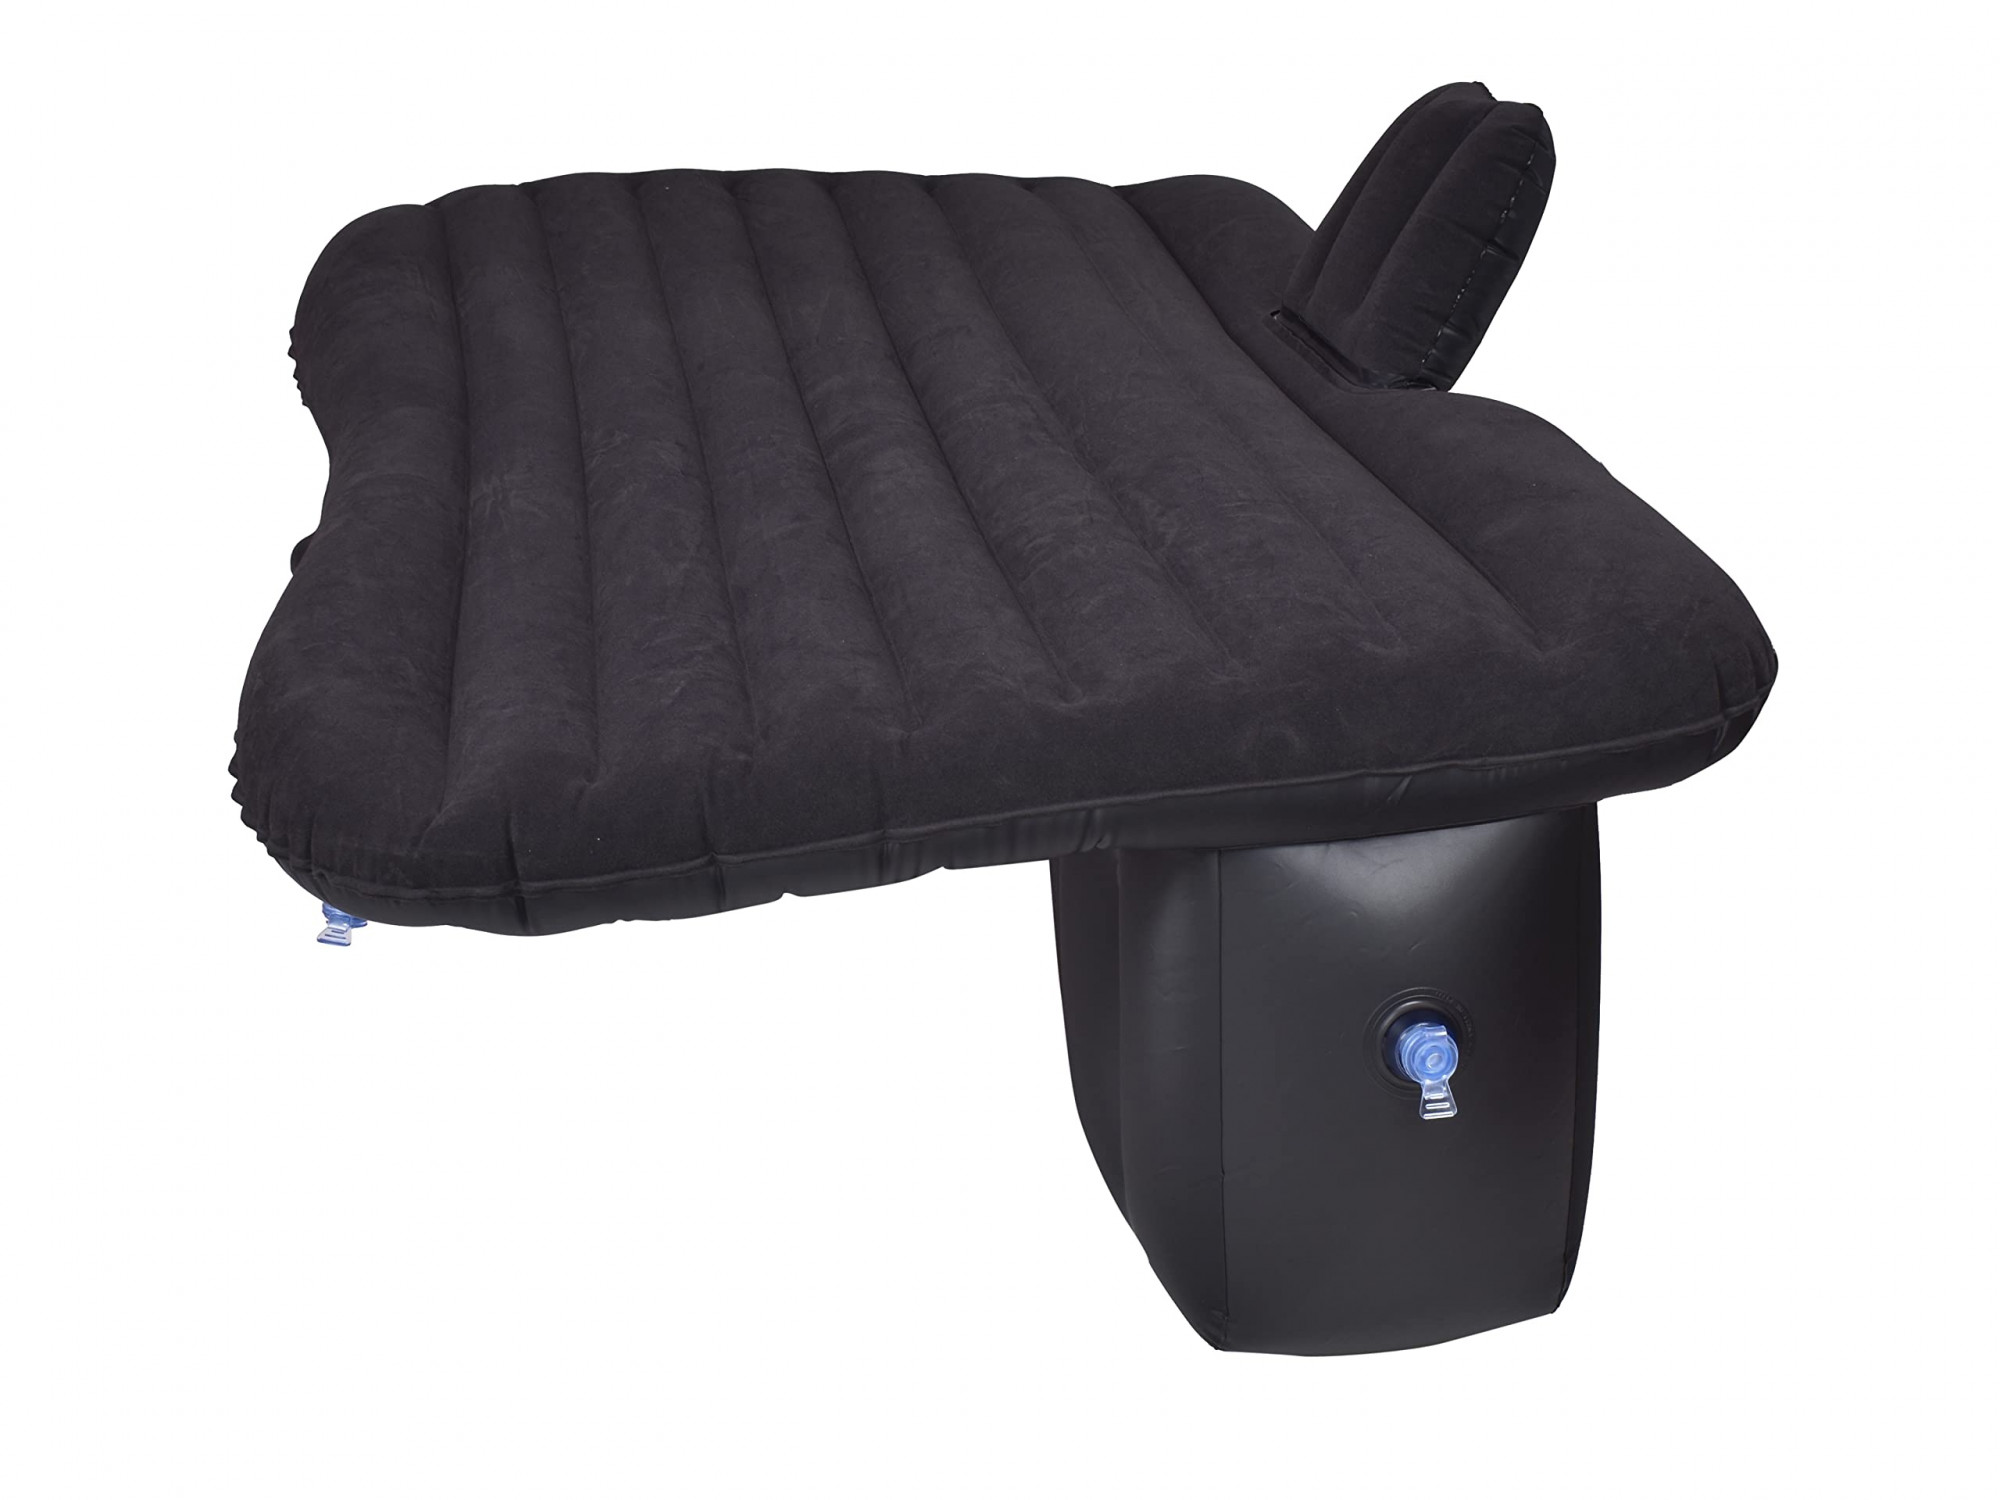 BROGBUS RAF Car Travel Vehicle Inflatable Cushion Mattress with Two Air Pillows, Car Air Pump and Repair tikki for Car Travel (Black, 53.5 x 32.2 x 16.5 Inches)